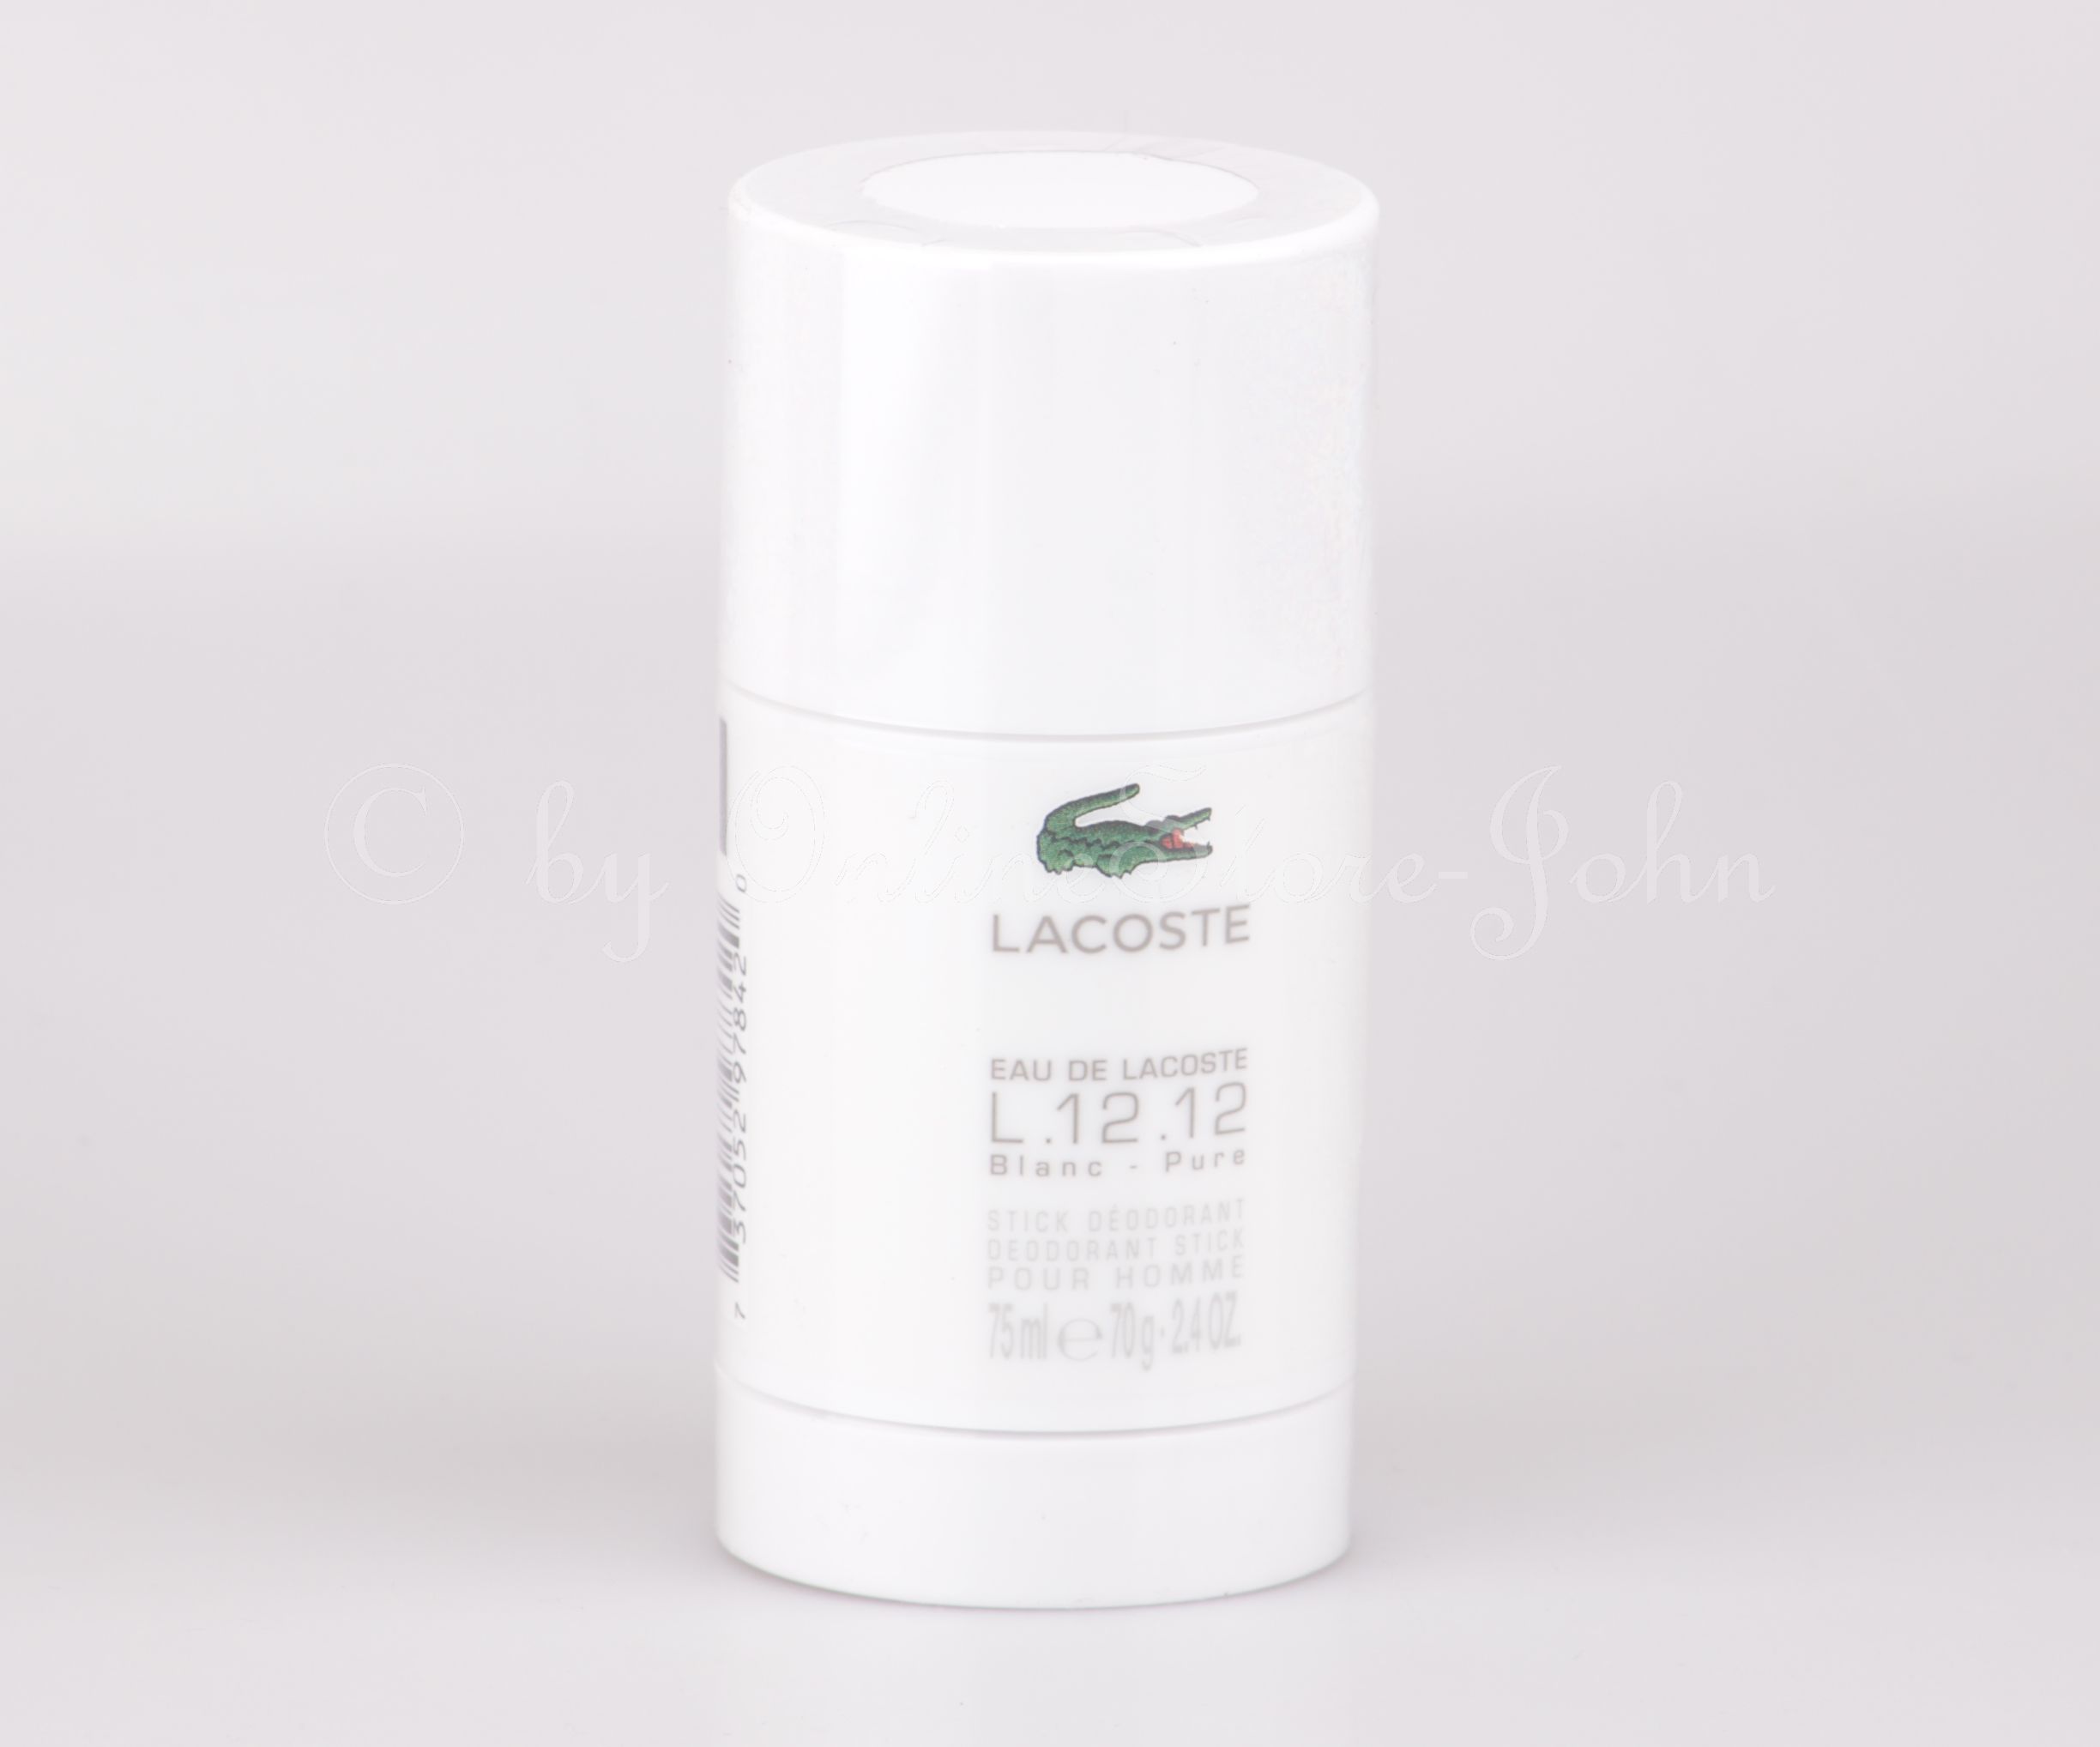 Lacoste - Eau de Lacoste L.12.12 Blanc 75ml Deo Stick - Deodorant günstig - Onlinestore John